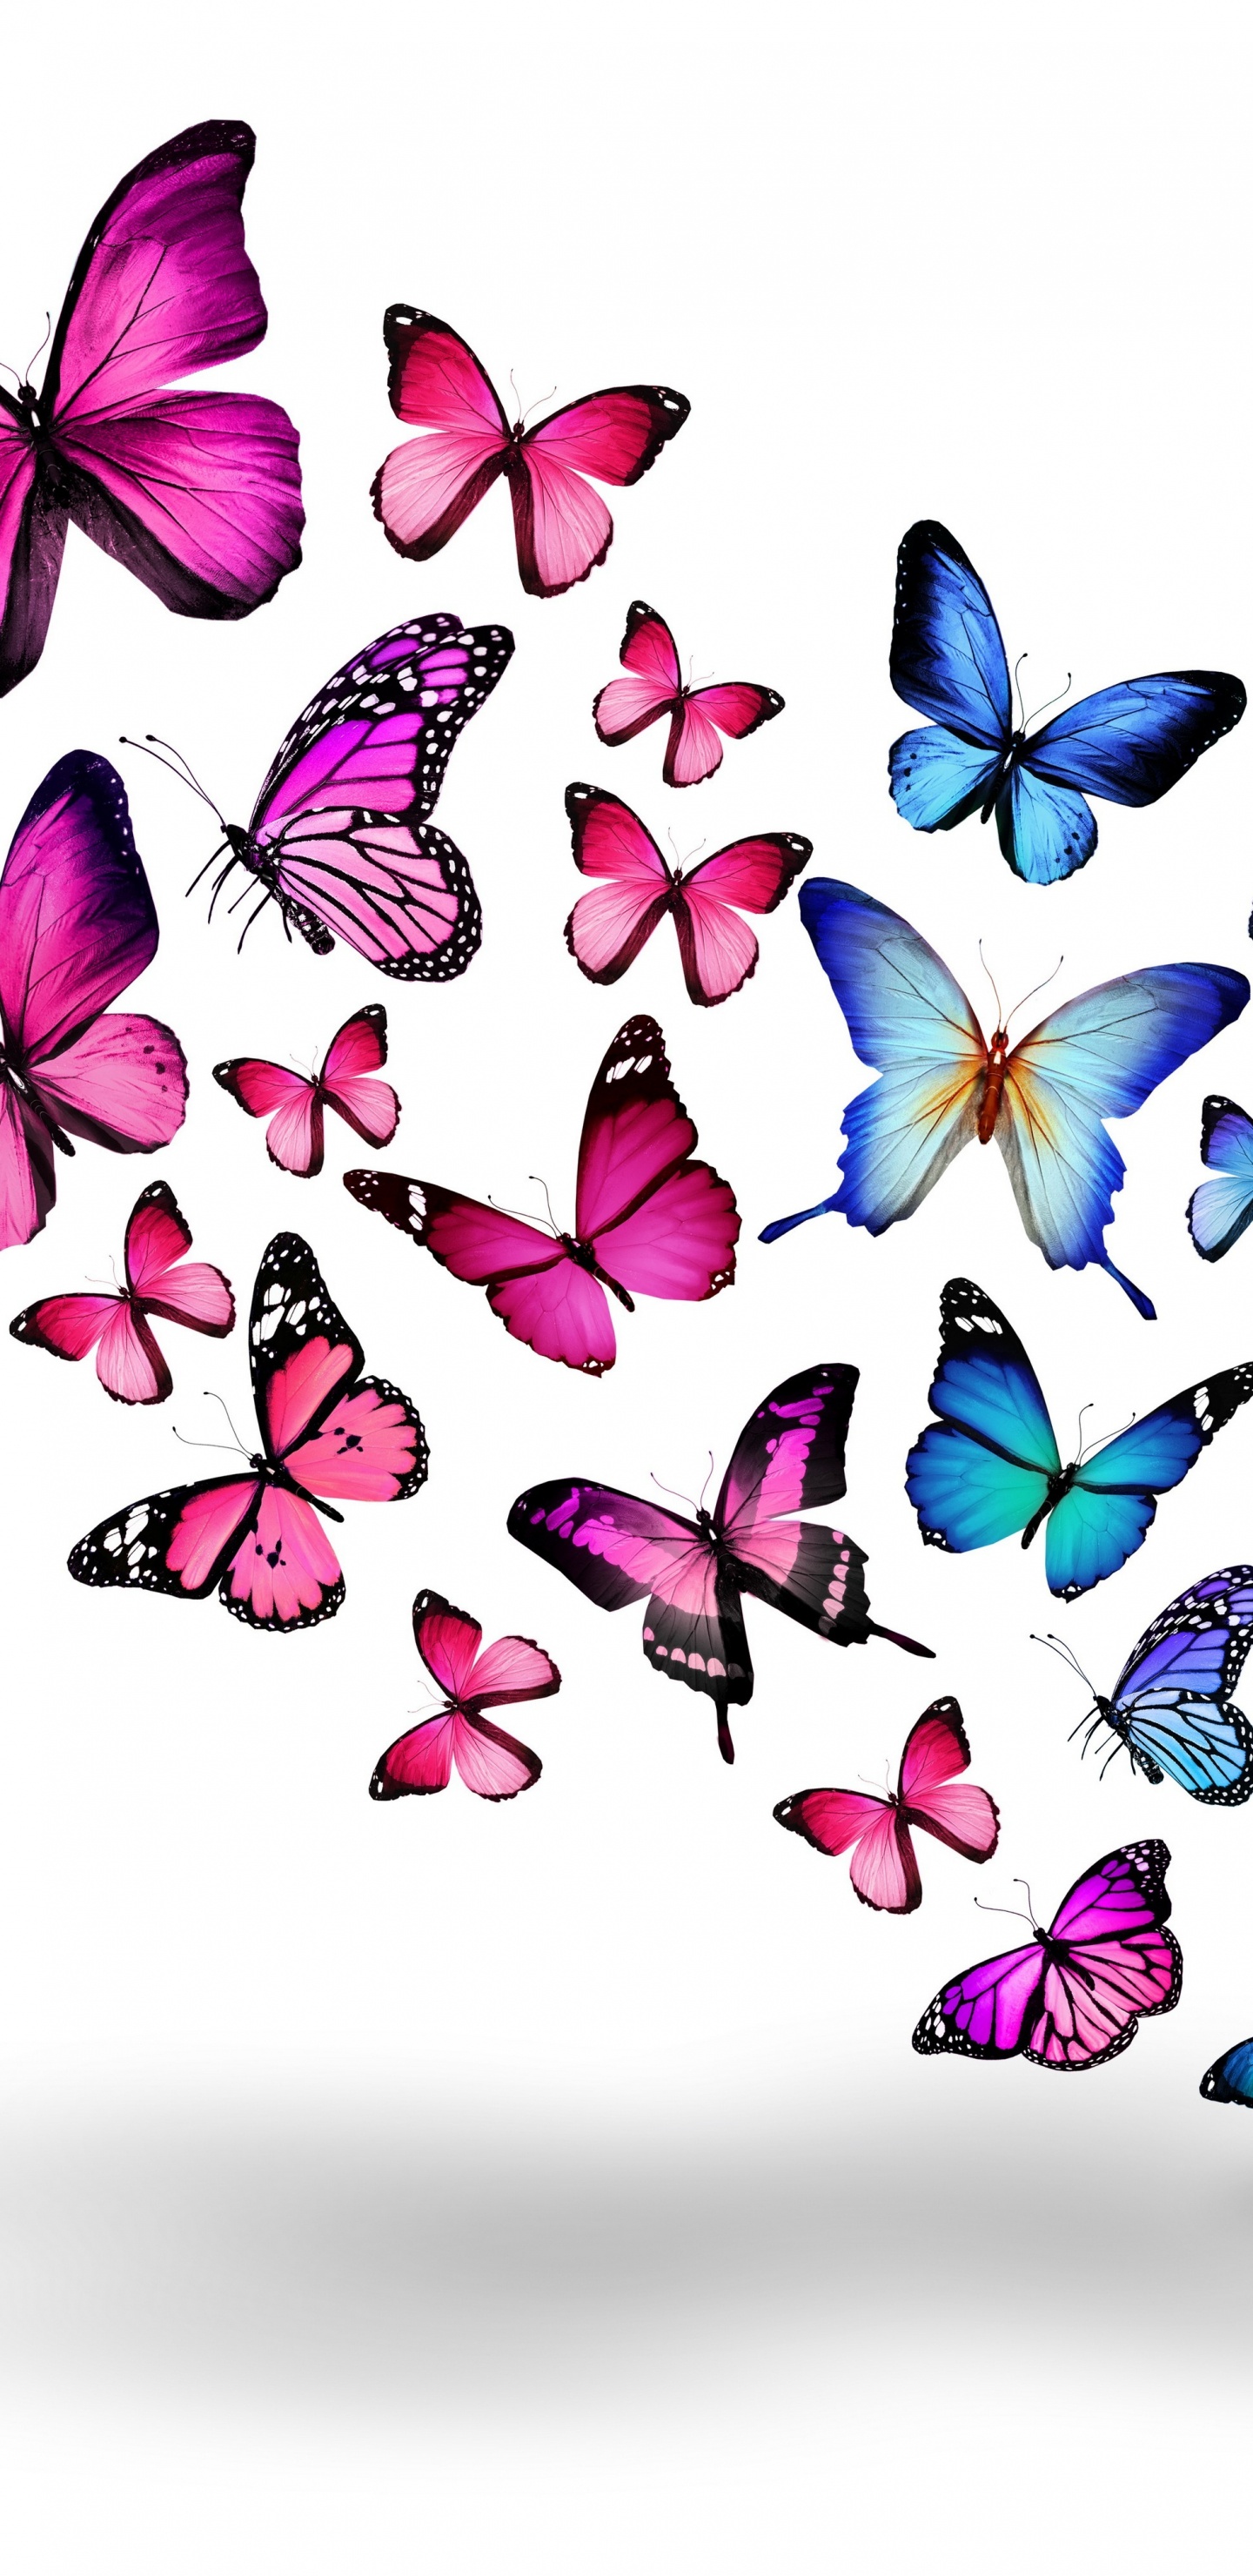 Papillons Bleus et Violets Sur Fond Blanc. Wallpaper in 1440x2960 Resolution